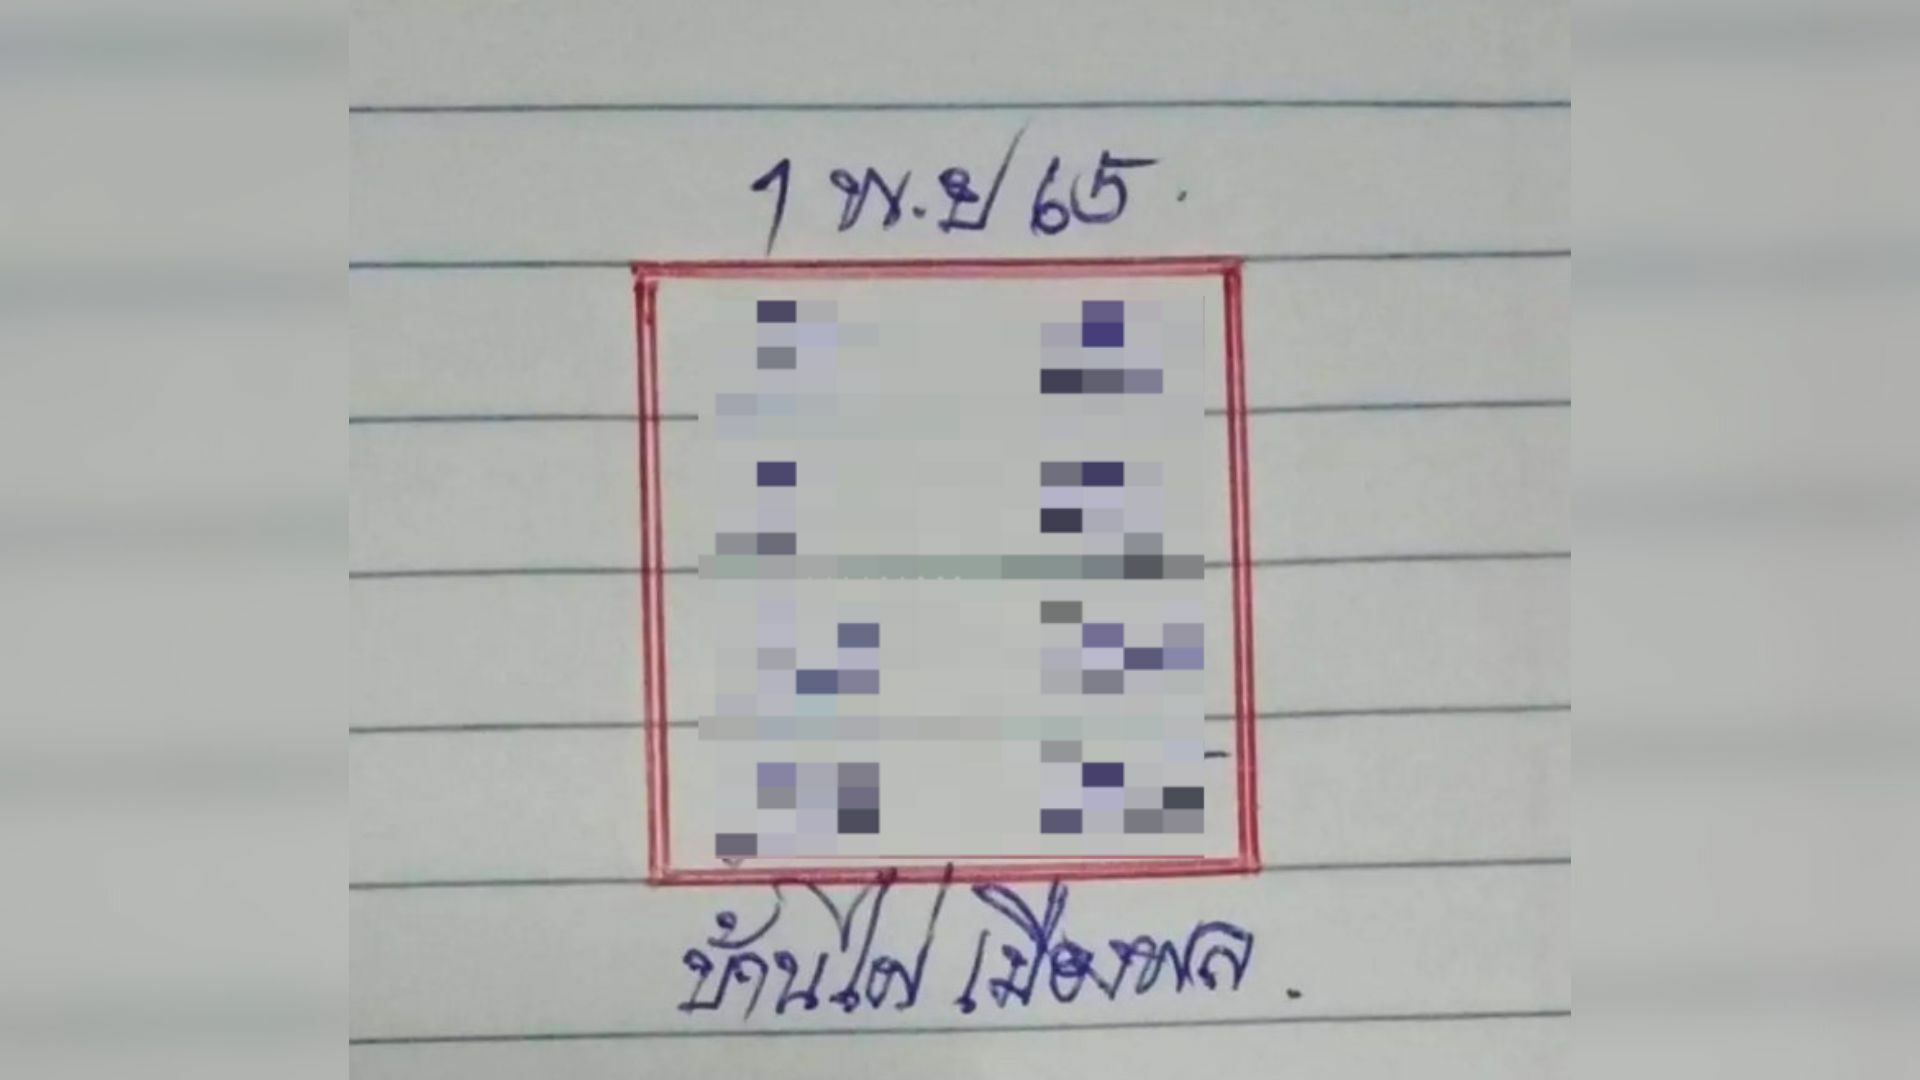 เลขเด็ด บ้านไผ่เมืองพล 1 11 65 แนวทางวิเคราะห์หวยงวดนี้ | Thaiger ข่าวไทย